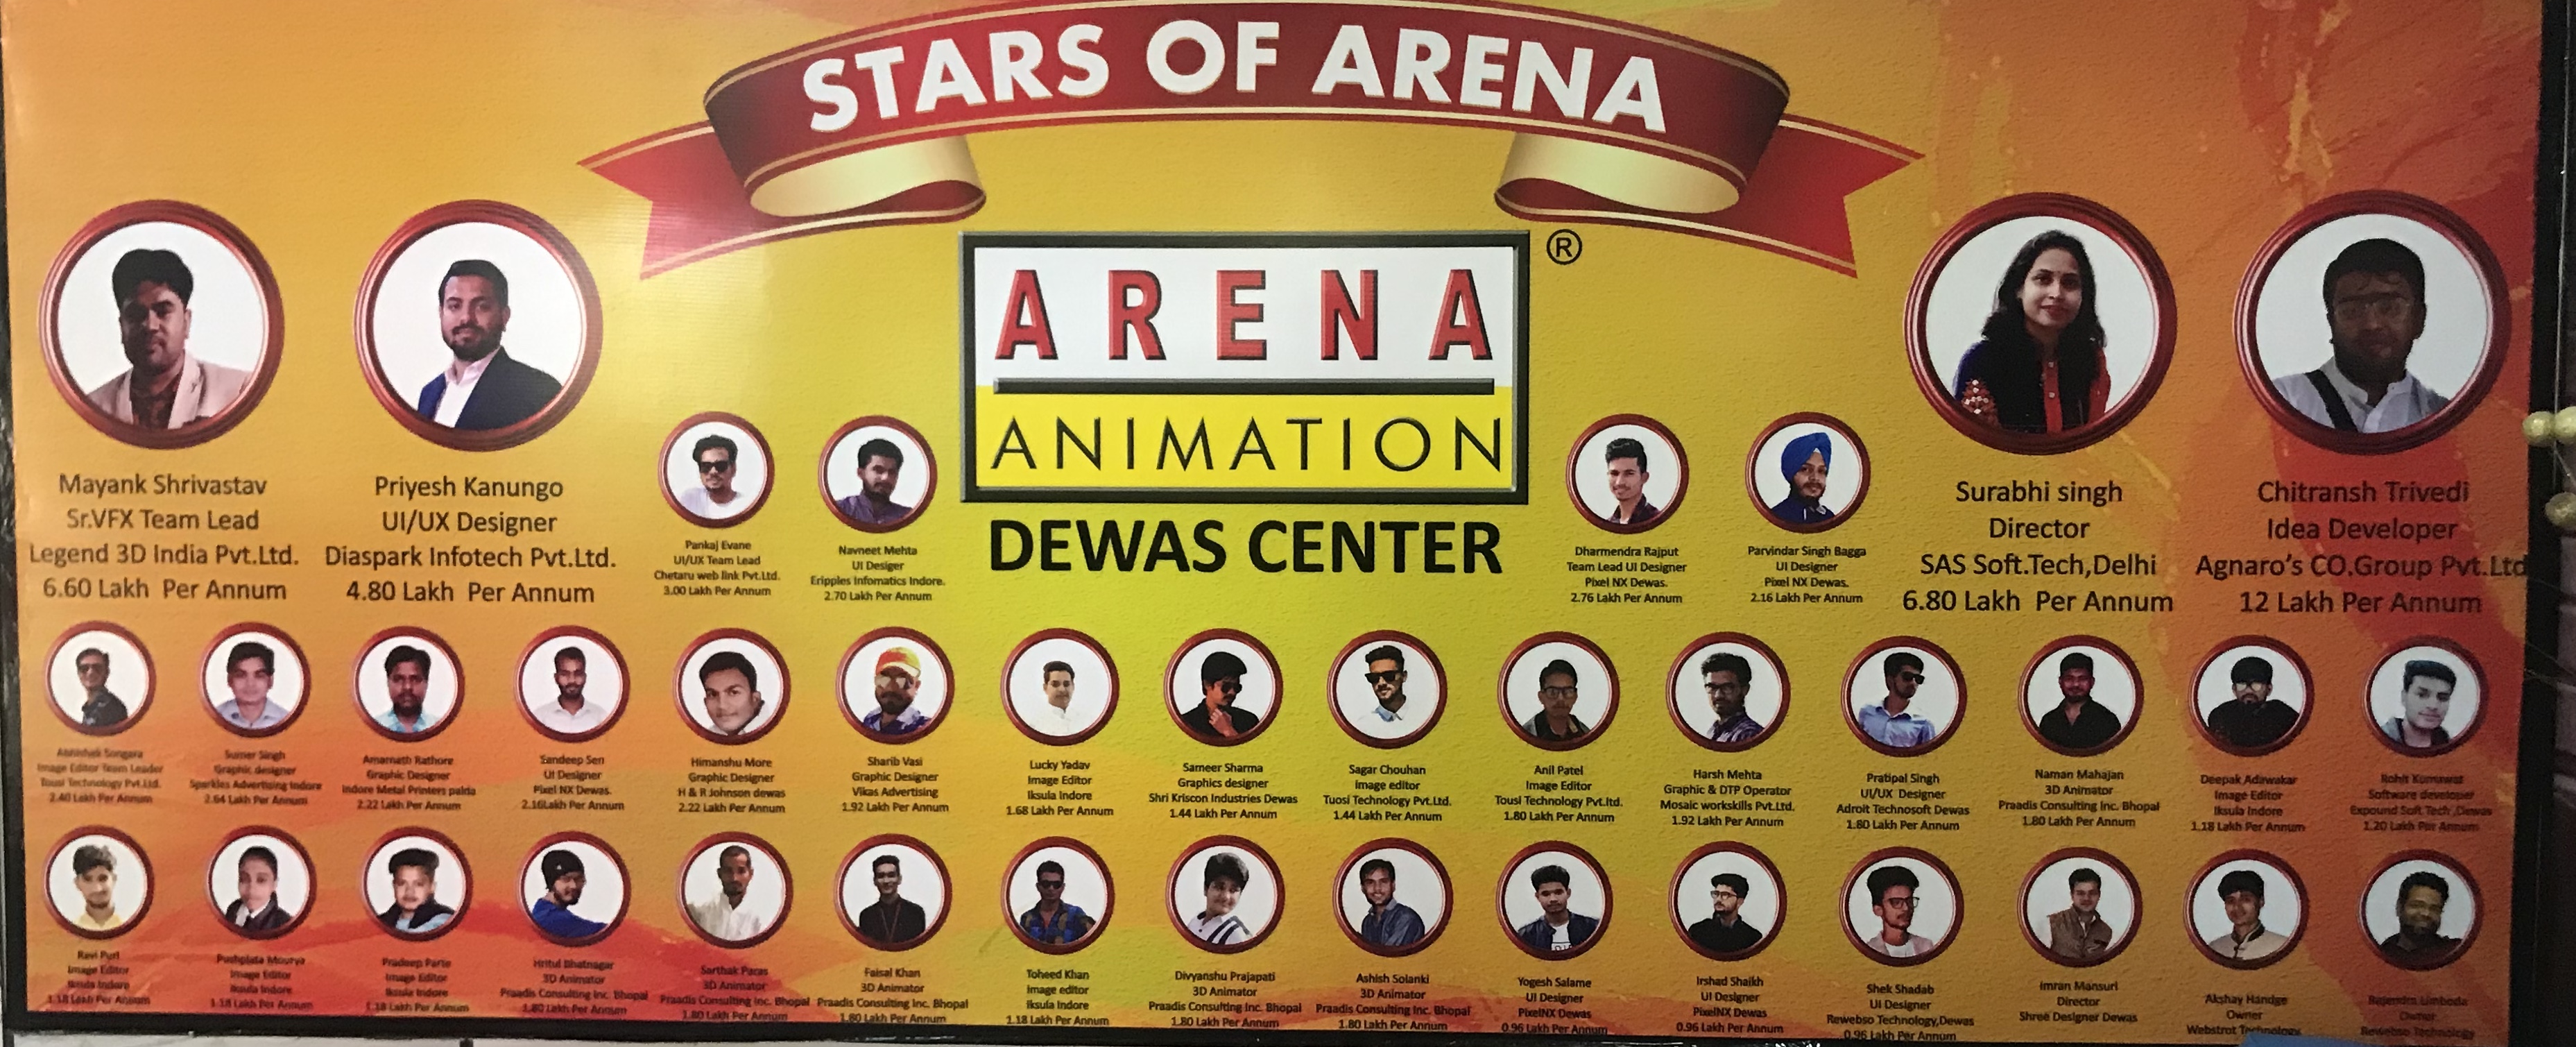 Arena Animation Dewas in . Road, Dewas-455001 | Sulekha Dewas